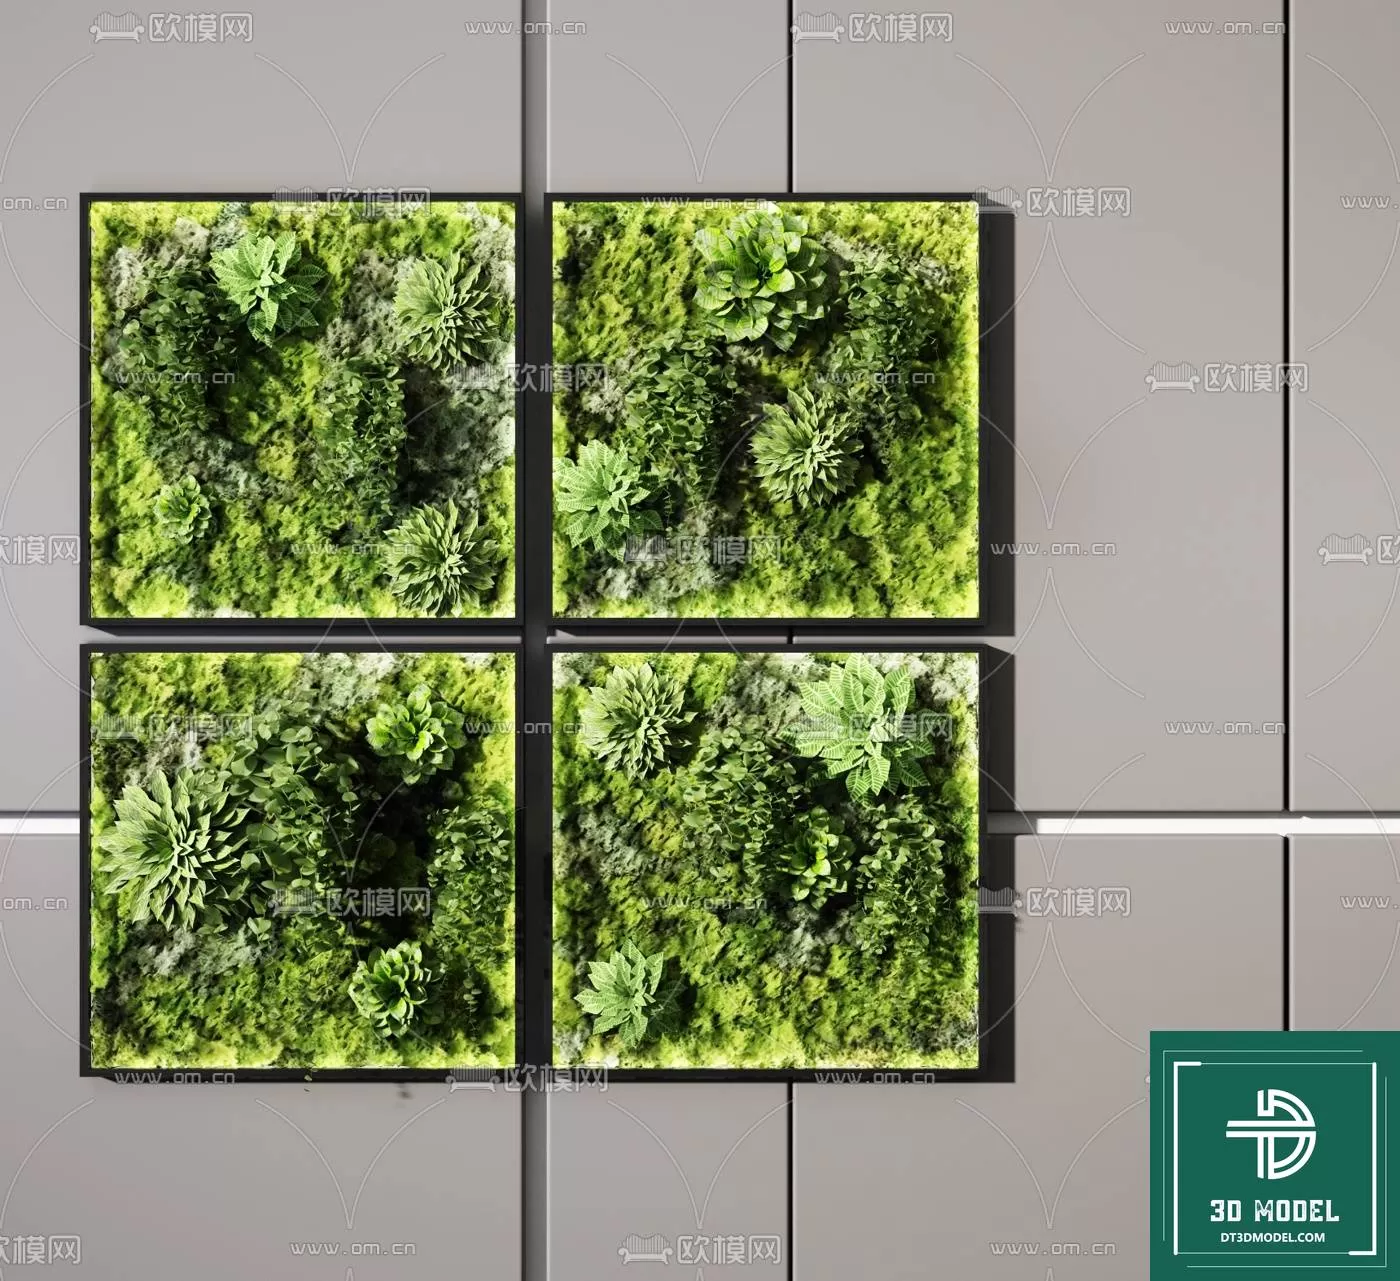 VERTICAL GARDEN – FITOWALL PLANT 3D MODEL – 037